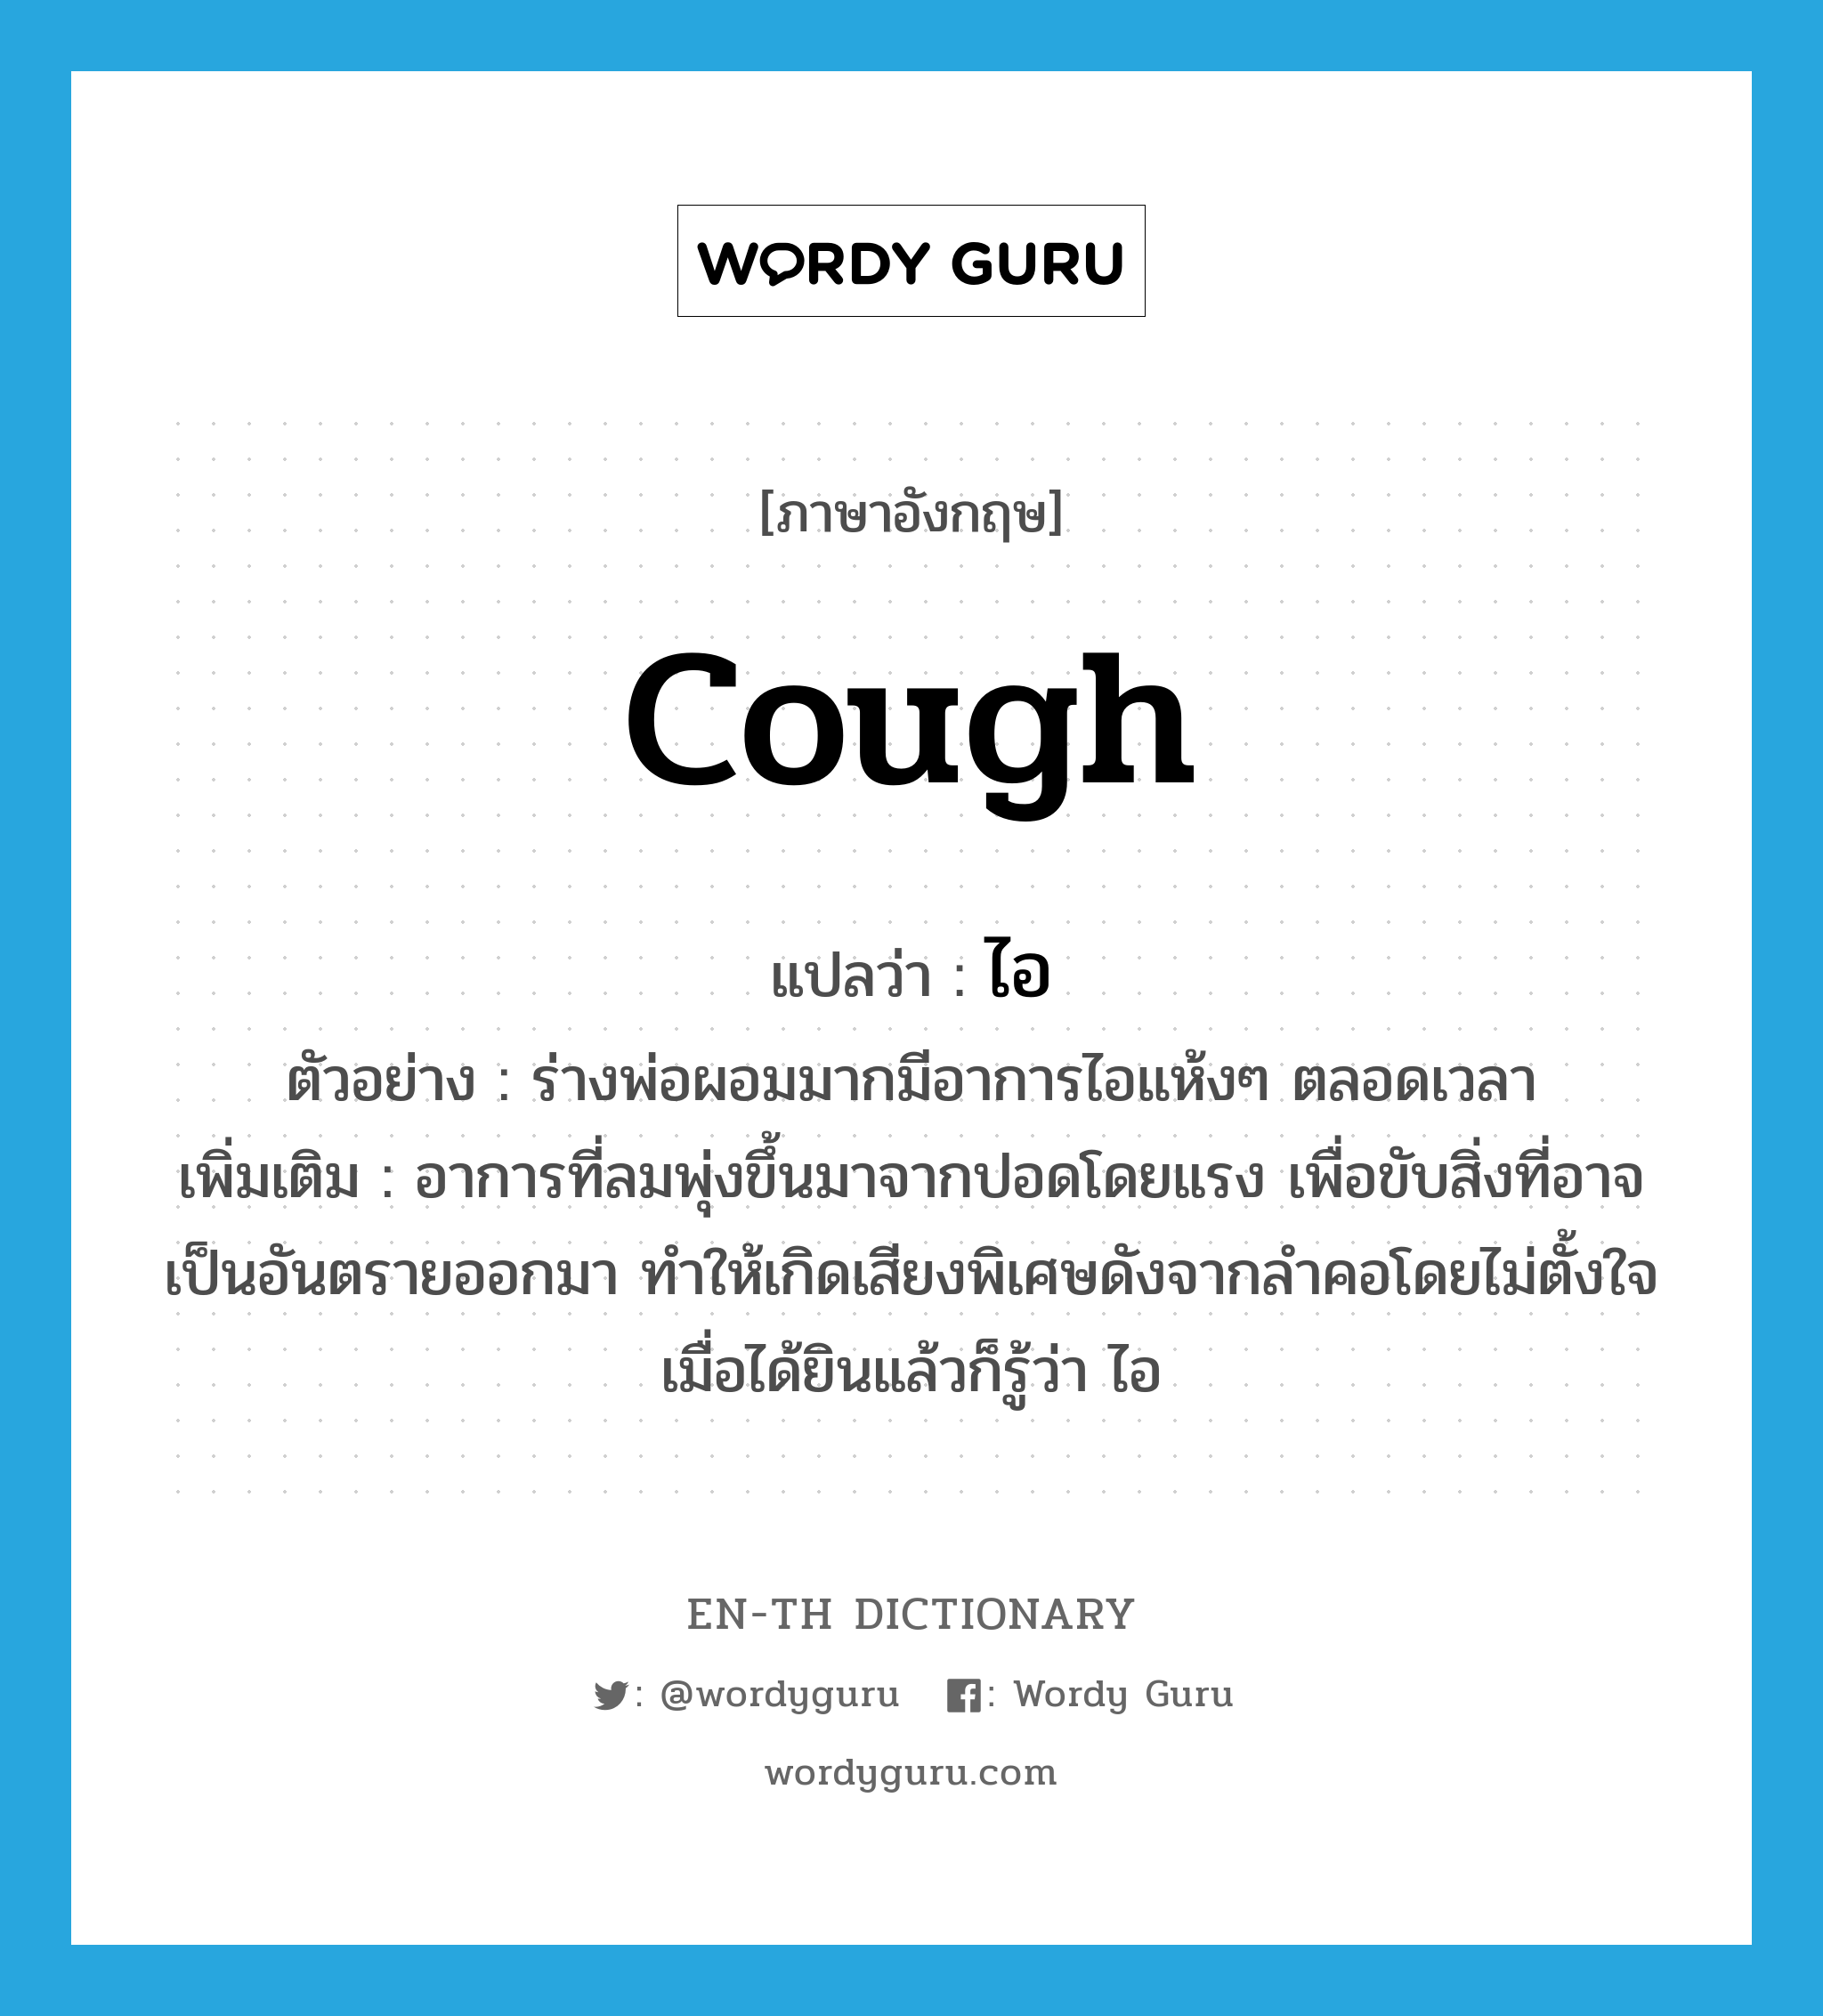 cough แปลว่า?, คำศัพท์ภาษาอังกฤษ cough แปลว่า ไอ ประเภท V ตัวอย่าง ร่างพ่อผอมมากมีอาการไอแห้งๆ ตลอดเวลา เพิ่มเติม อาการที่ลมพุ่งขึ้นมาจากปอดโดยแรง เพื่อขับสิ่งที่อาจเป็นอันตรายออกมา ทำให้เกิดเสียงพิเศษดังจากลำคอโดยไม่ตั้งใจ เมื่อได้ยินแล้วก็รู้ว่า ไอ หมวด V